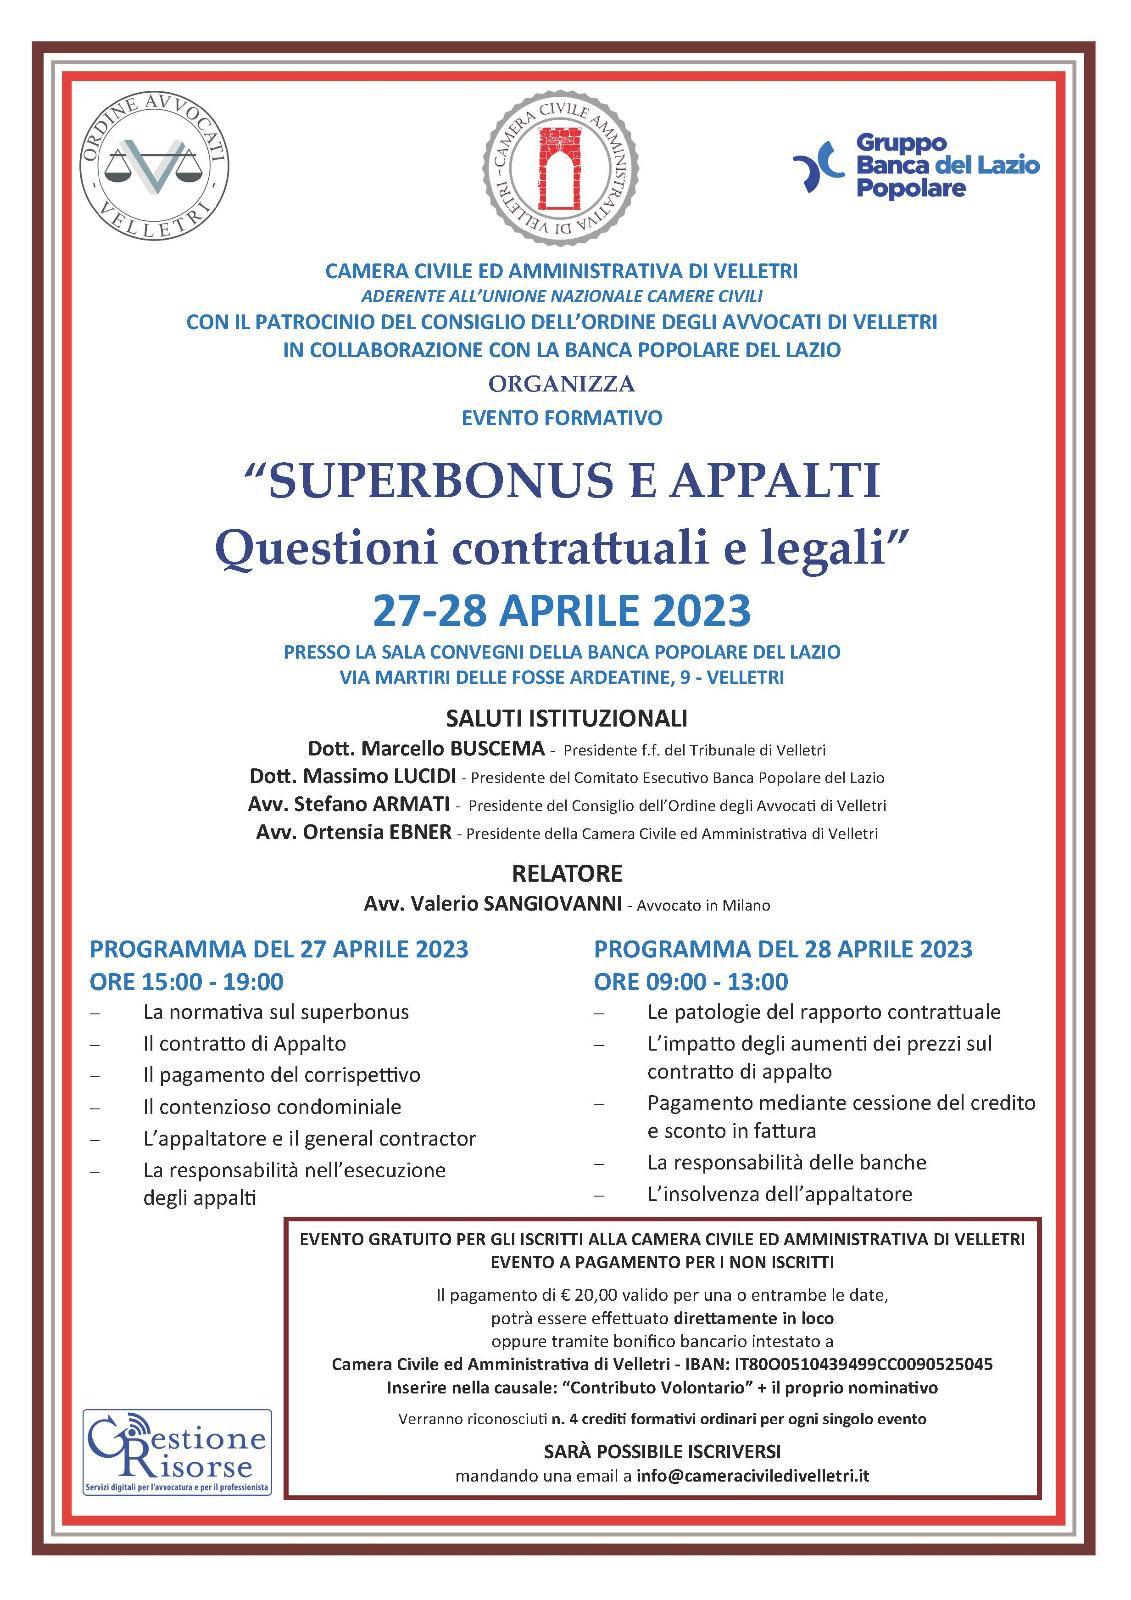 “Superbonus e appalti”: evento formativo organizzato dalla Camera Civile ed Amministrativa di Velletri